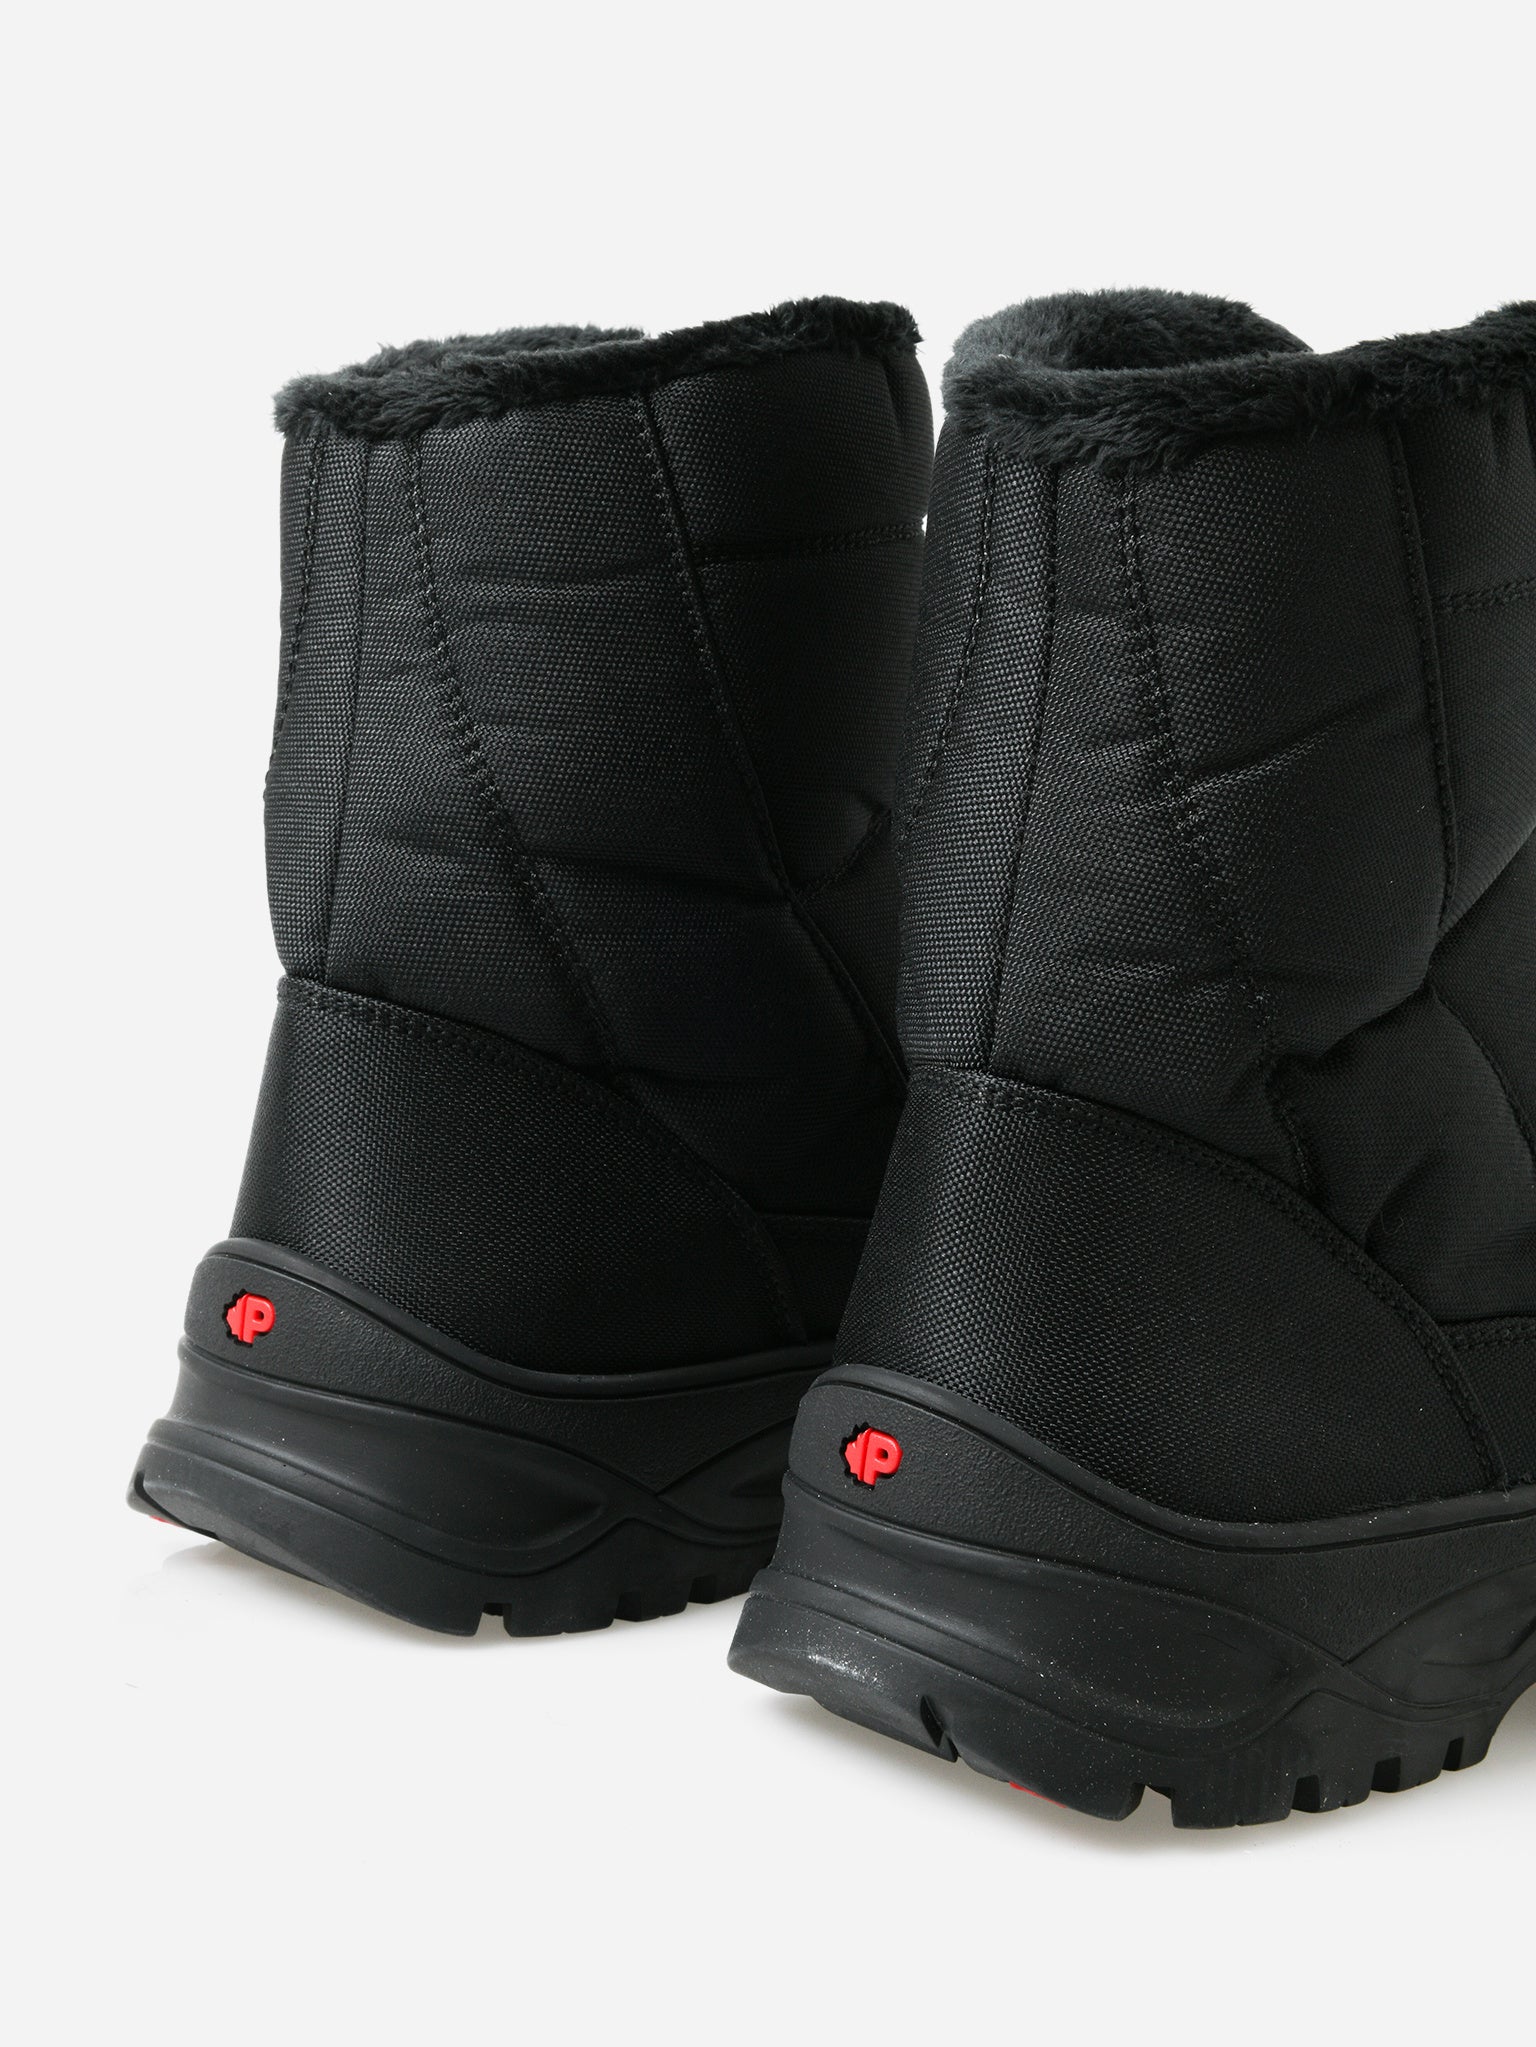 Pajar Men's Icepack Boot – saintbernard.com